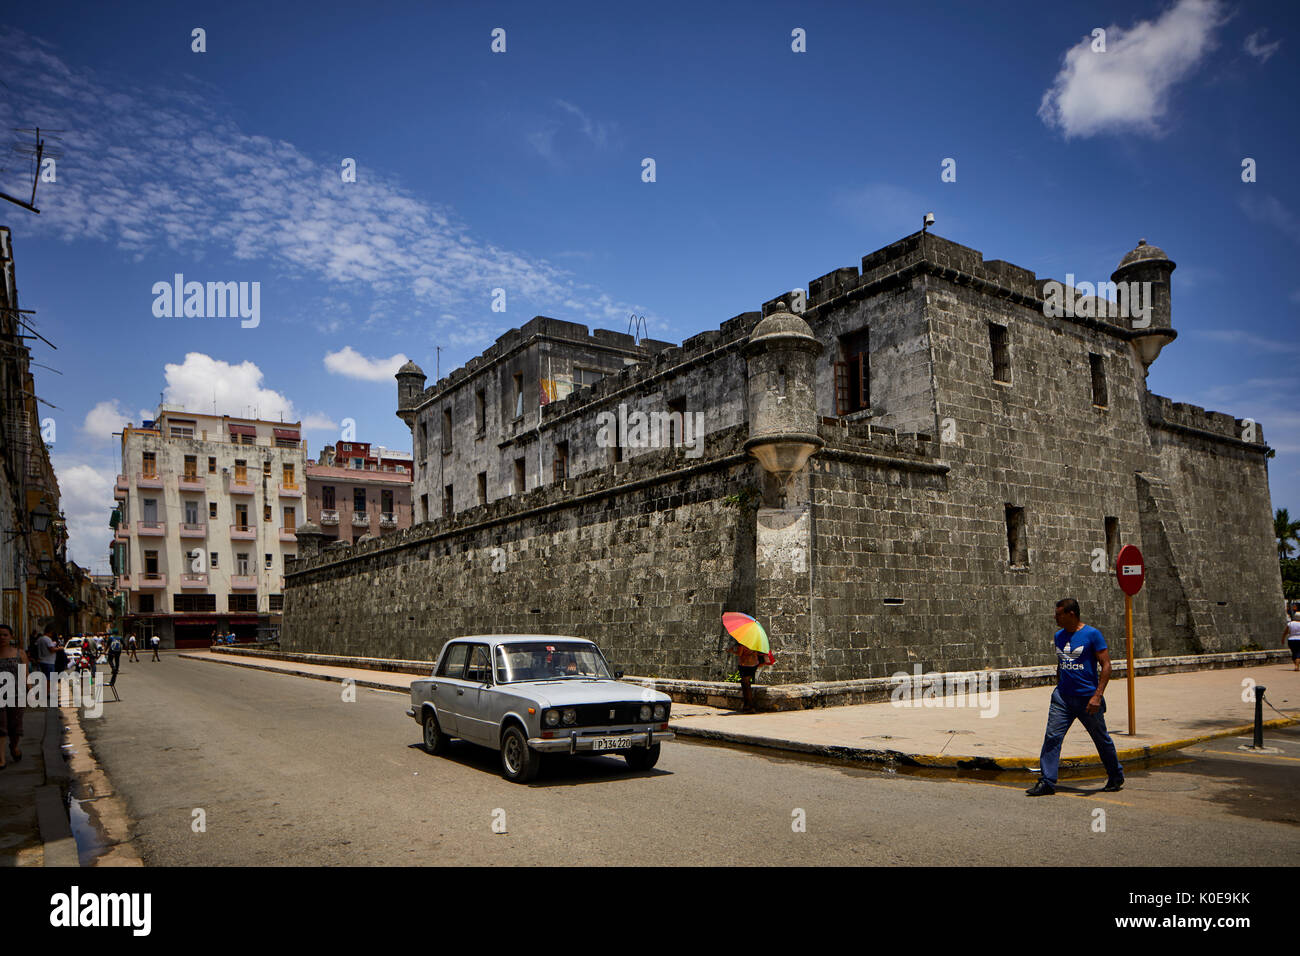 Kubanische, Kapital zurück der Polizeistation Festung Gebäude im historischen Zentrum, Havanna, Kuba, Unesco Weltkulturerbe Stockfoto